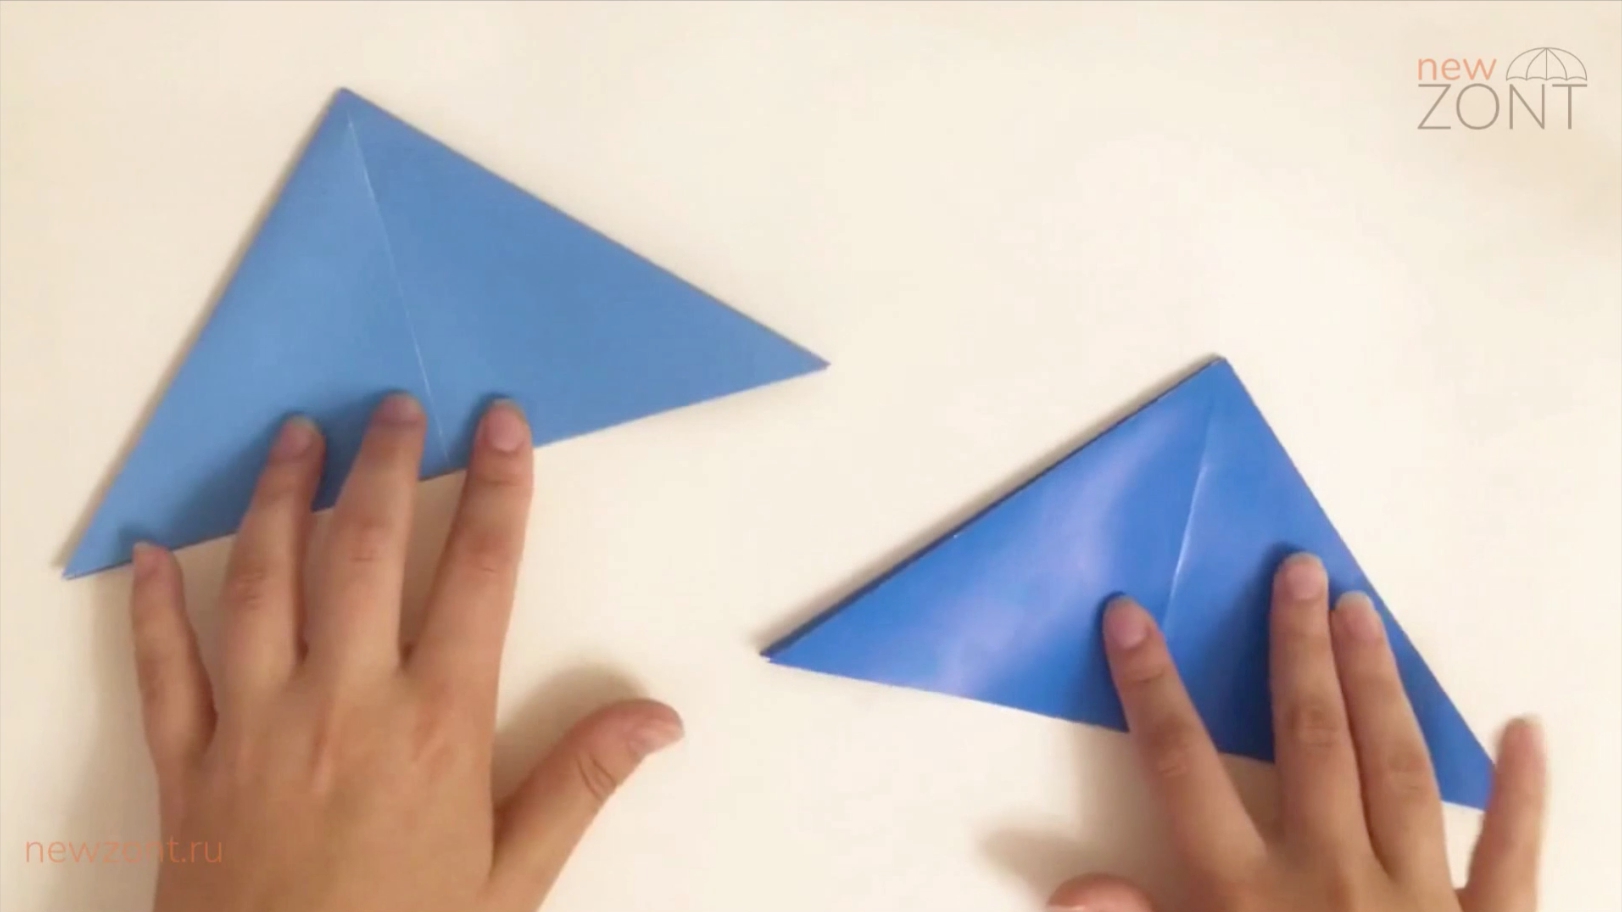 Как сделать Зонтик из бумаги А4 - ОТКРЫВАЕТСЯ и ЗАКРЫВАЕТСЯ. Оригами из бумаги. Origami